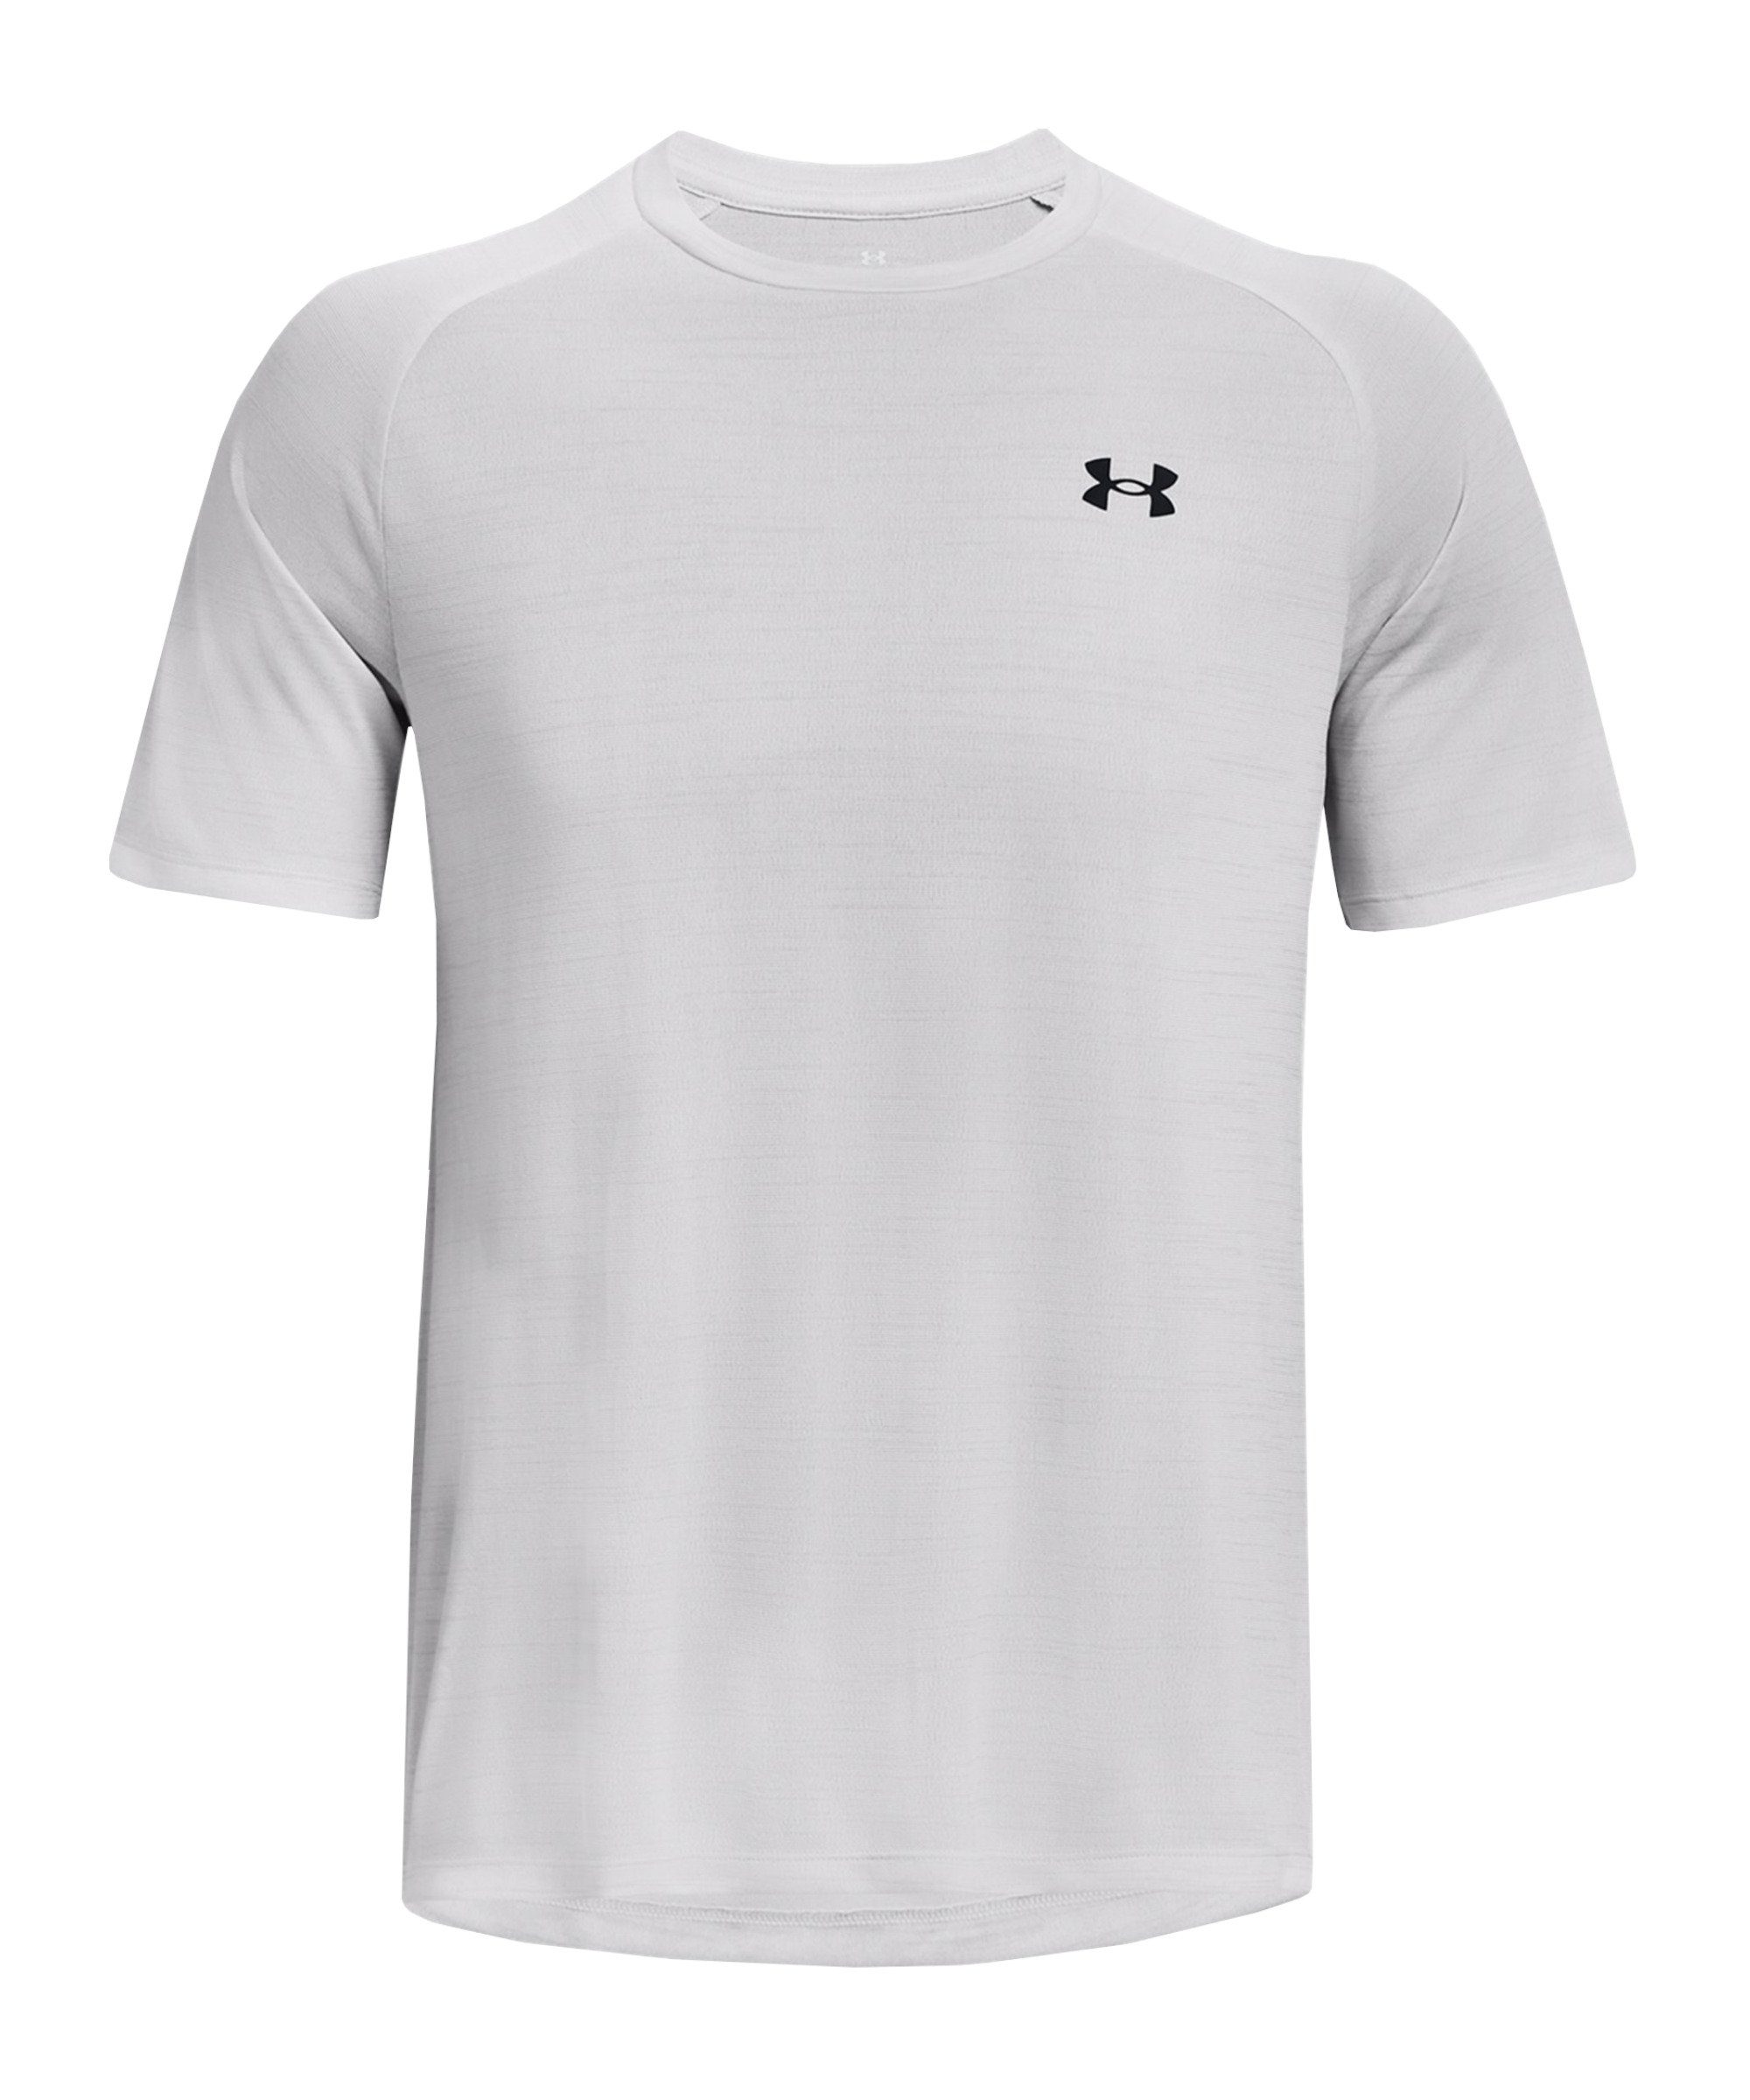 Tiger grau T-Shirt default Under Tech T-Shirt Armour® 2.0